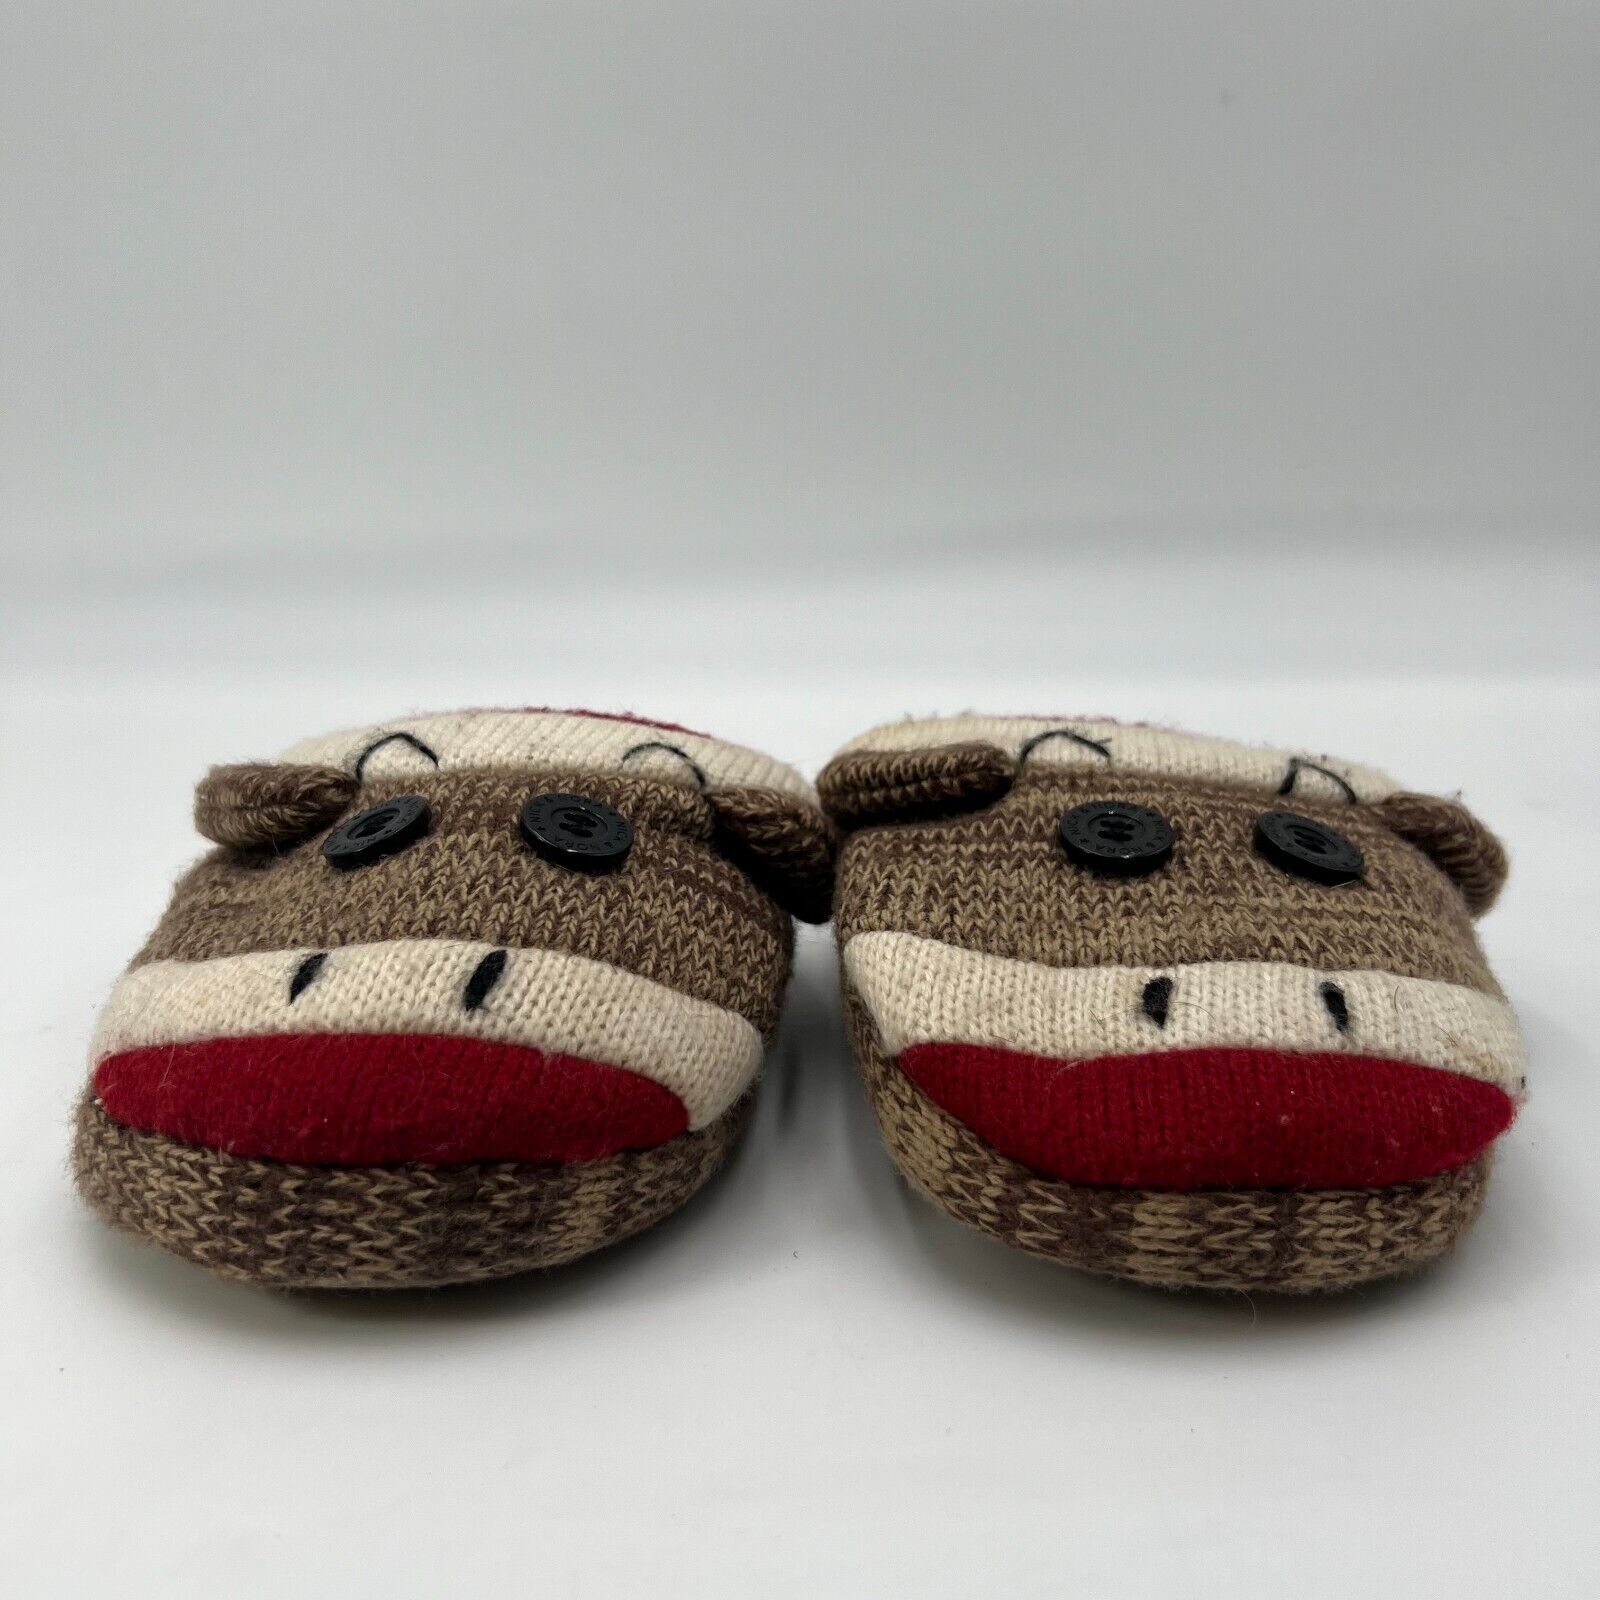 Nick & Nora Sock Monkey Slip on House Sleepwear Slippers Rubber Sole Size L 8-9